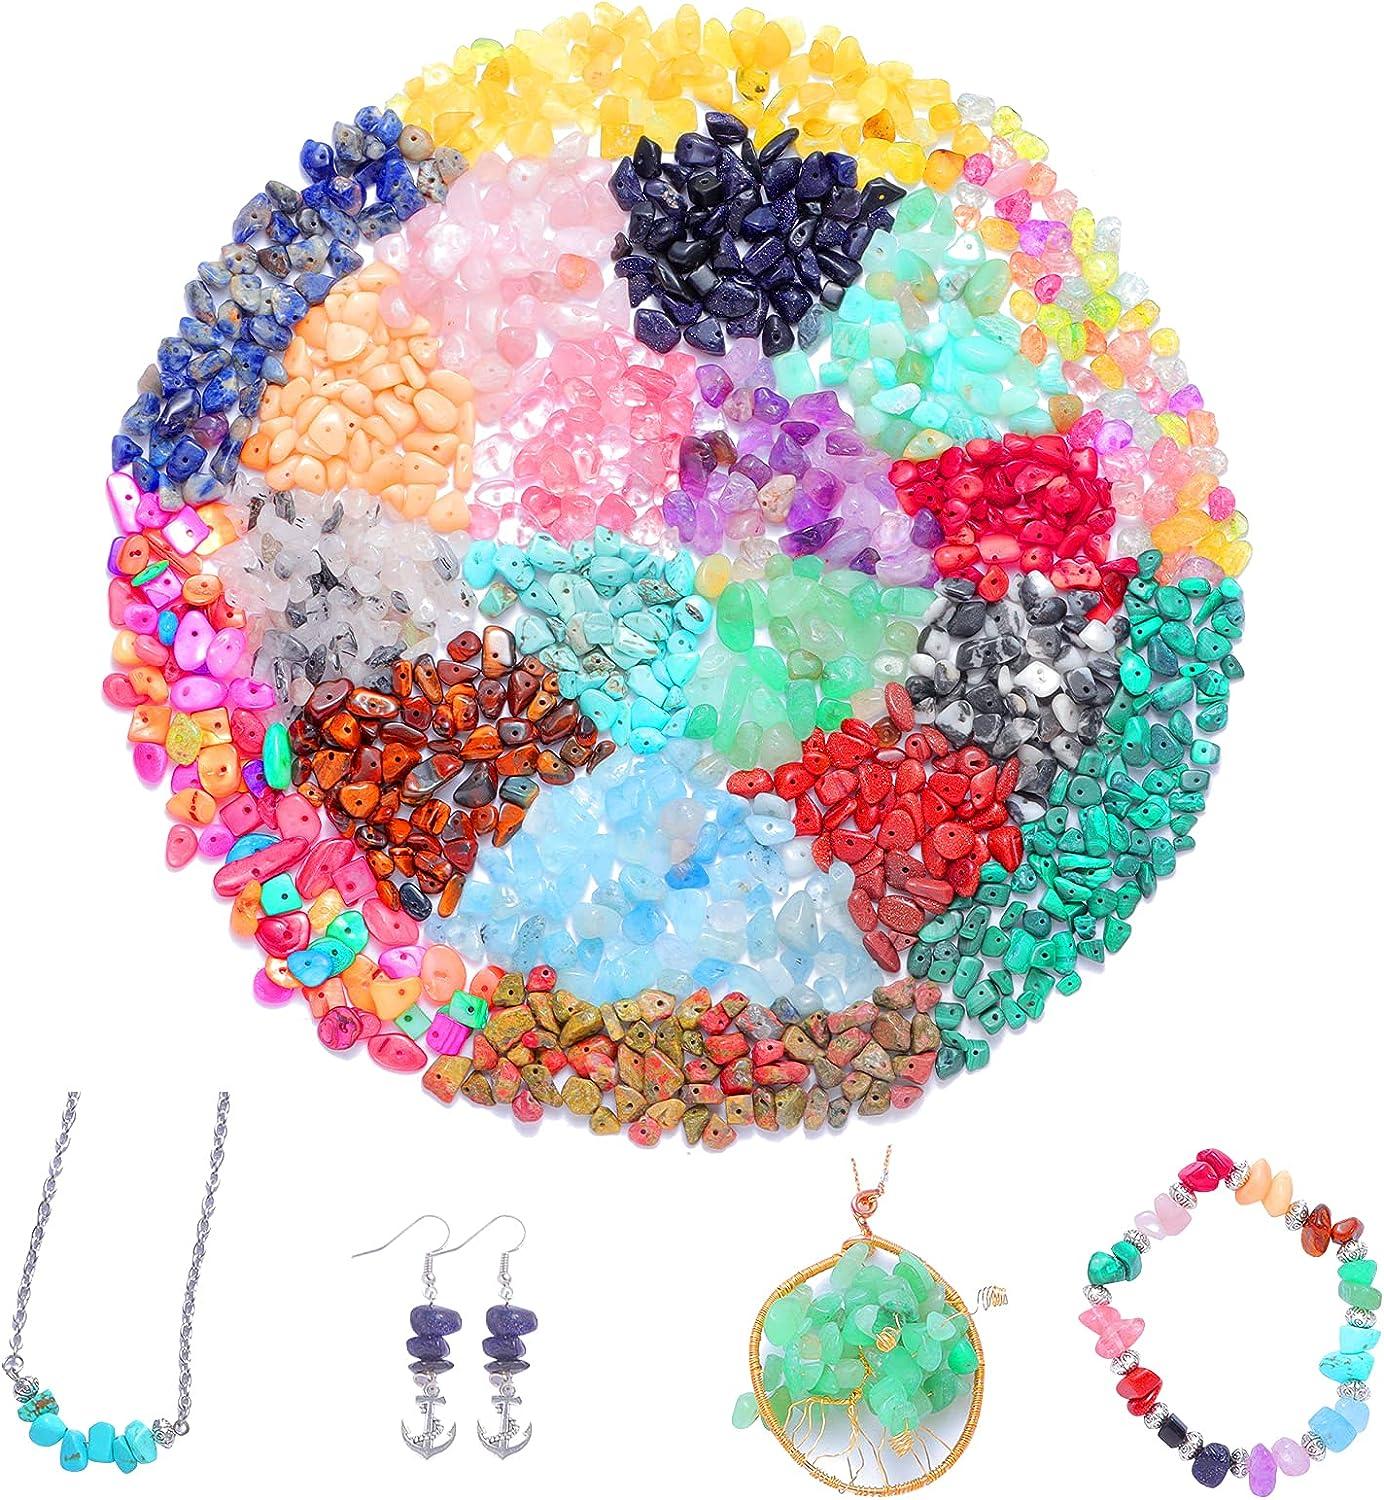 Xmada Jewelry Making Kit - 1587 PCS Beads for Jewelry Making